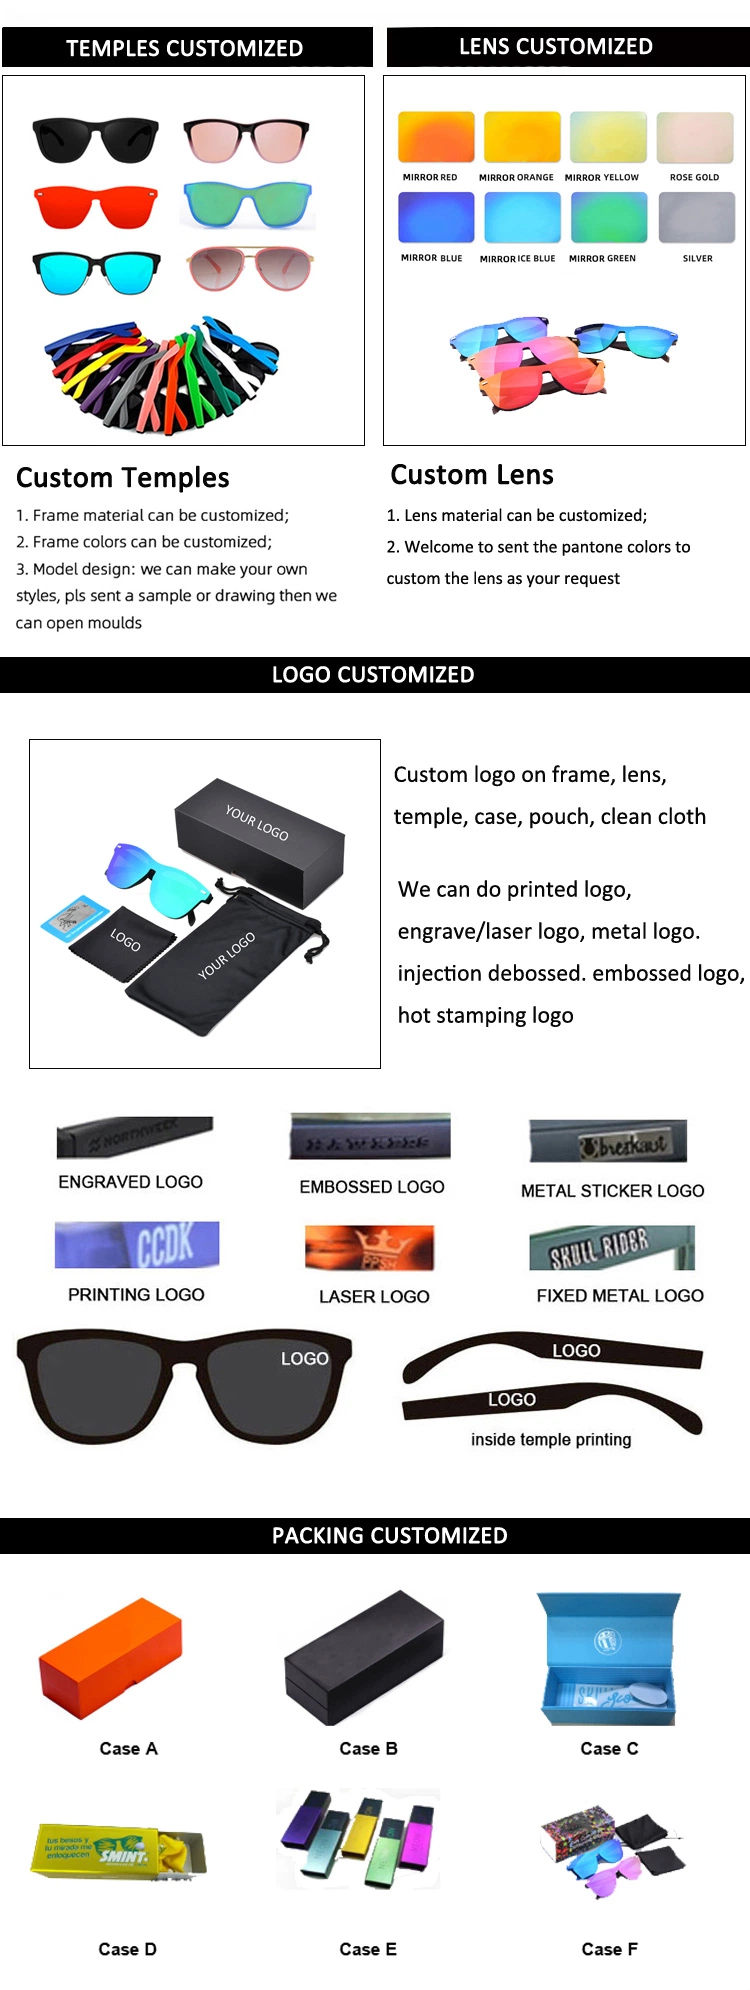 Custom Your Logo Brand Designer Men Women UV 400 Lens Anti Blue Light Blocking Glasses